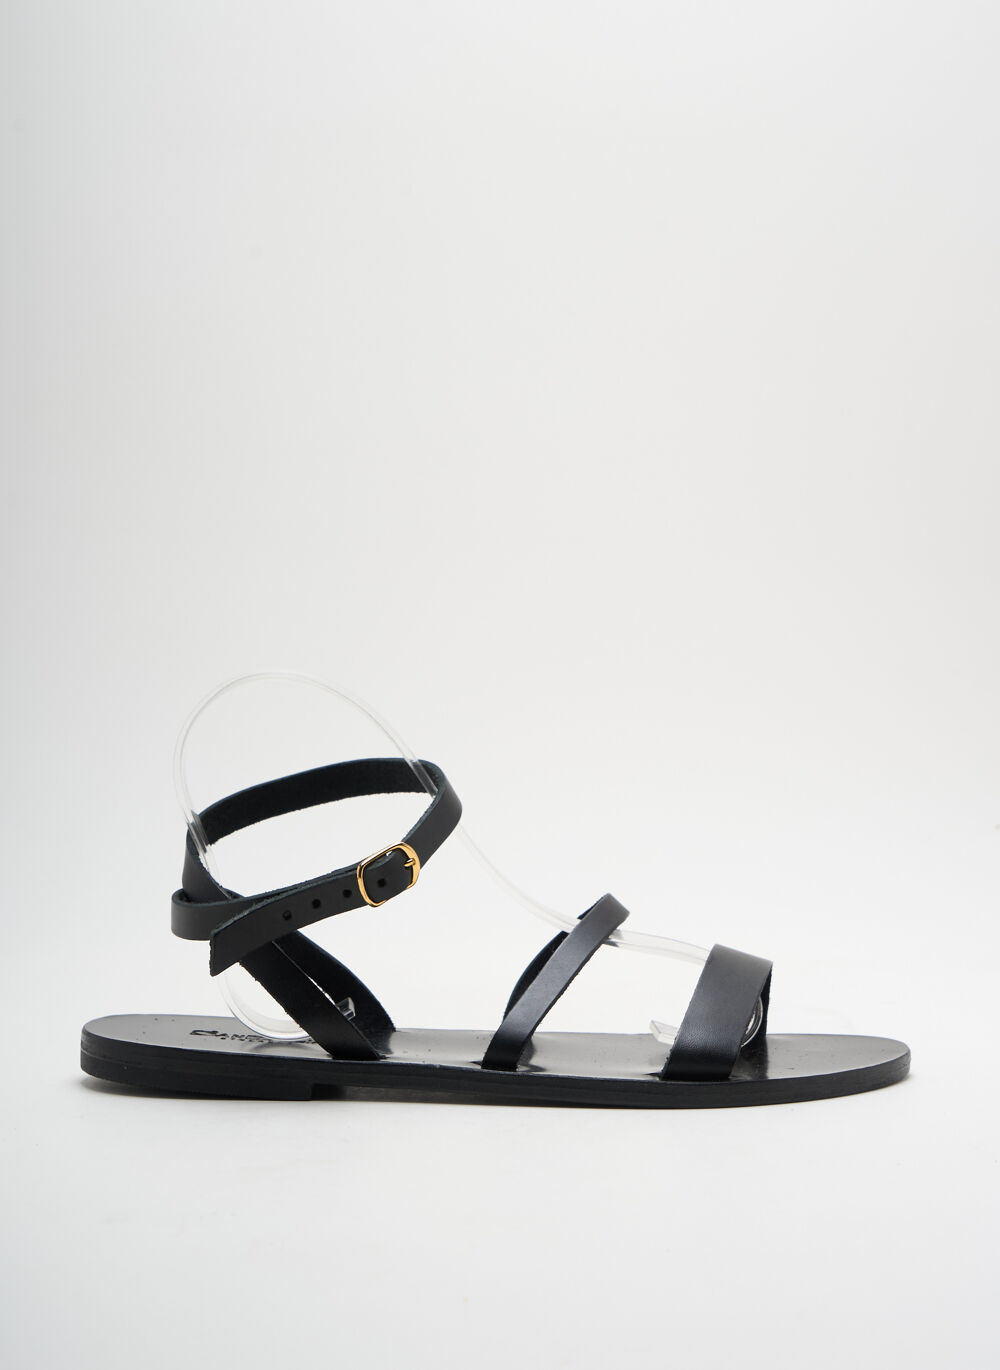 Sandales/Nu pieds femme Sandalia Cyclades noir taille : 40 Vtements